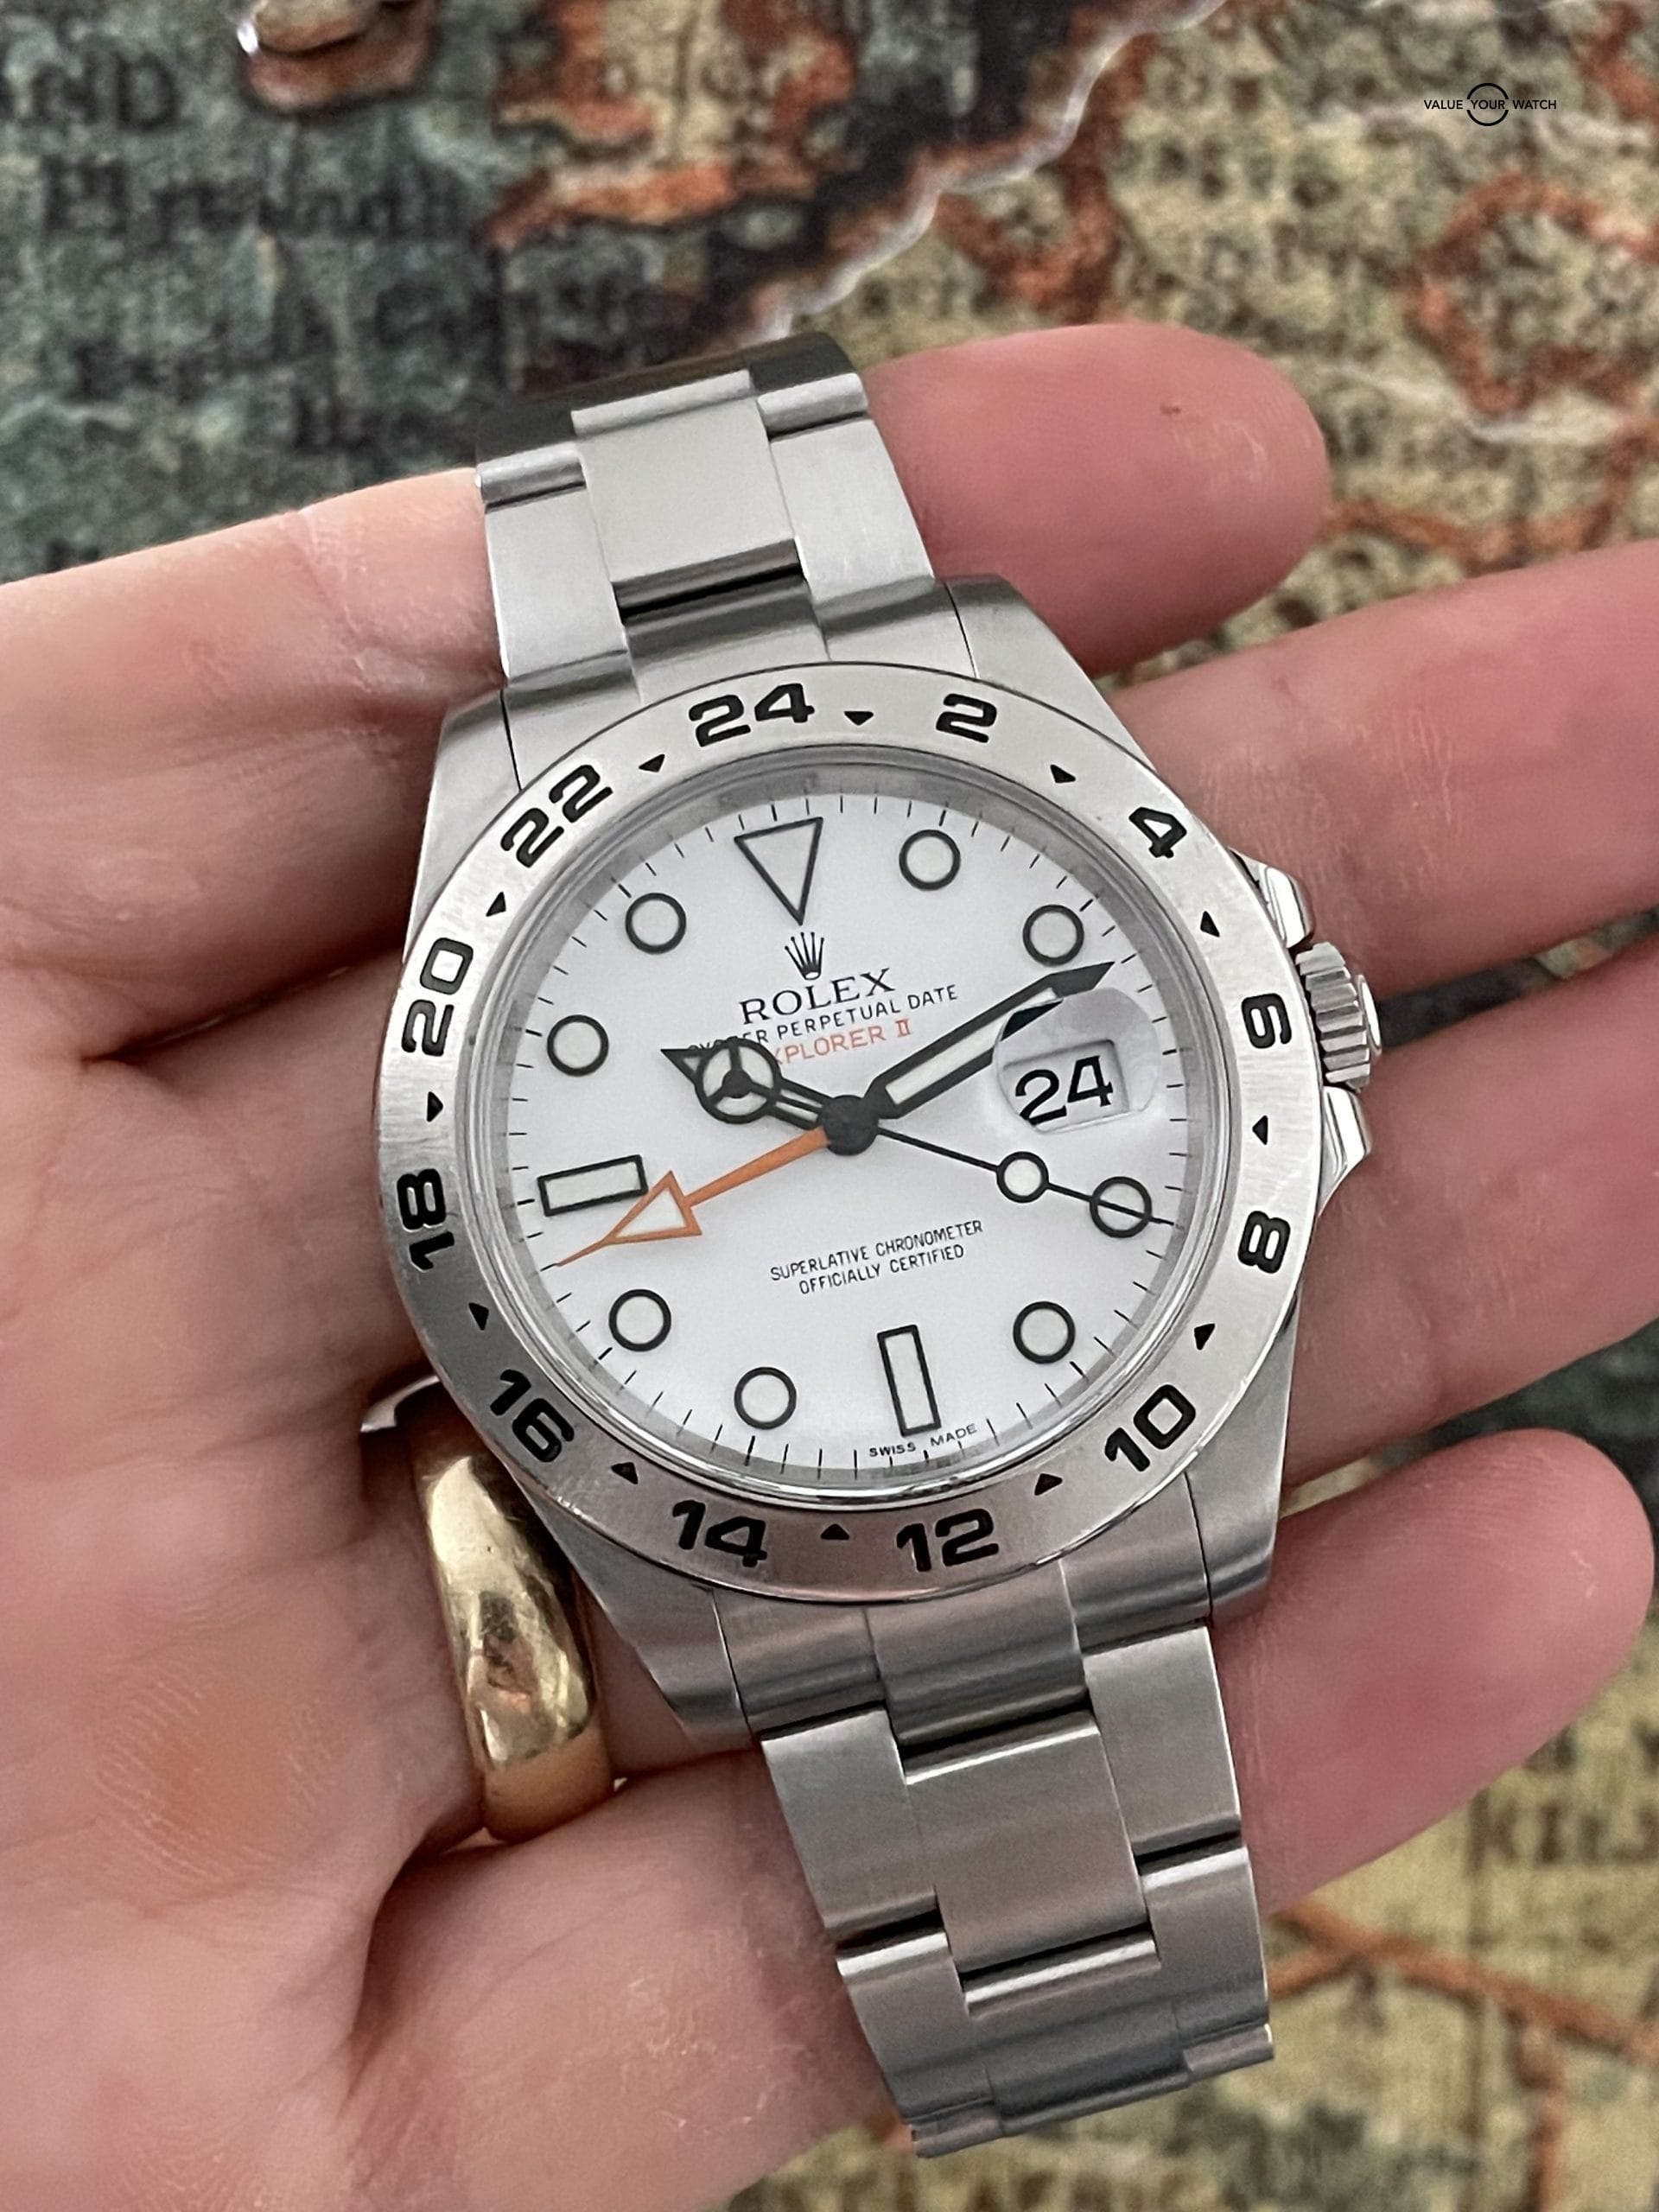 Skeptisk deform Feje Rolex Explorer II 42mm White Polar Dial GMT – 216570 – Full Set 2016 |  Value Your Watch